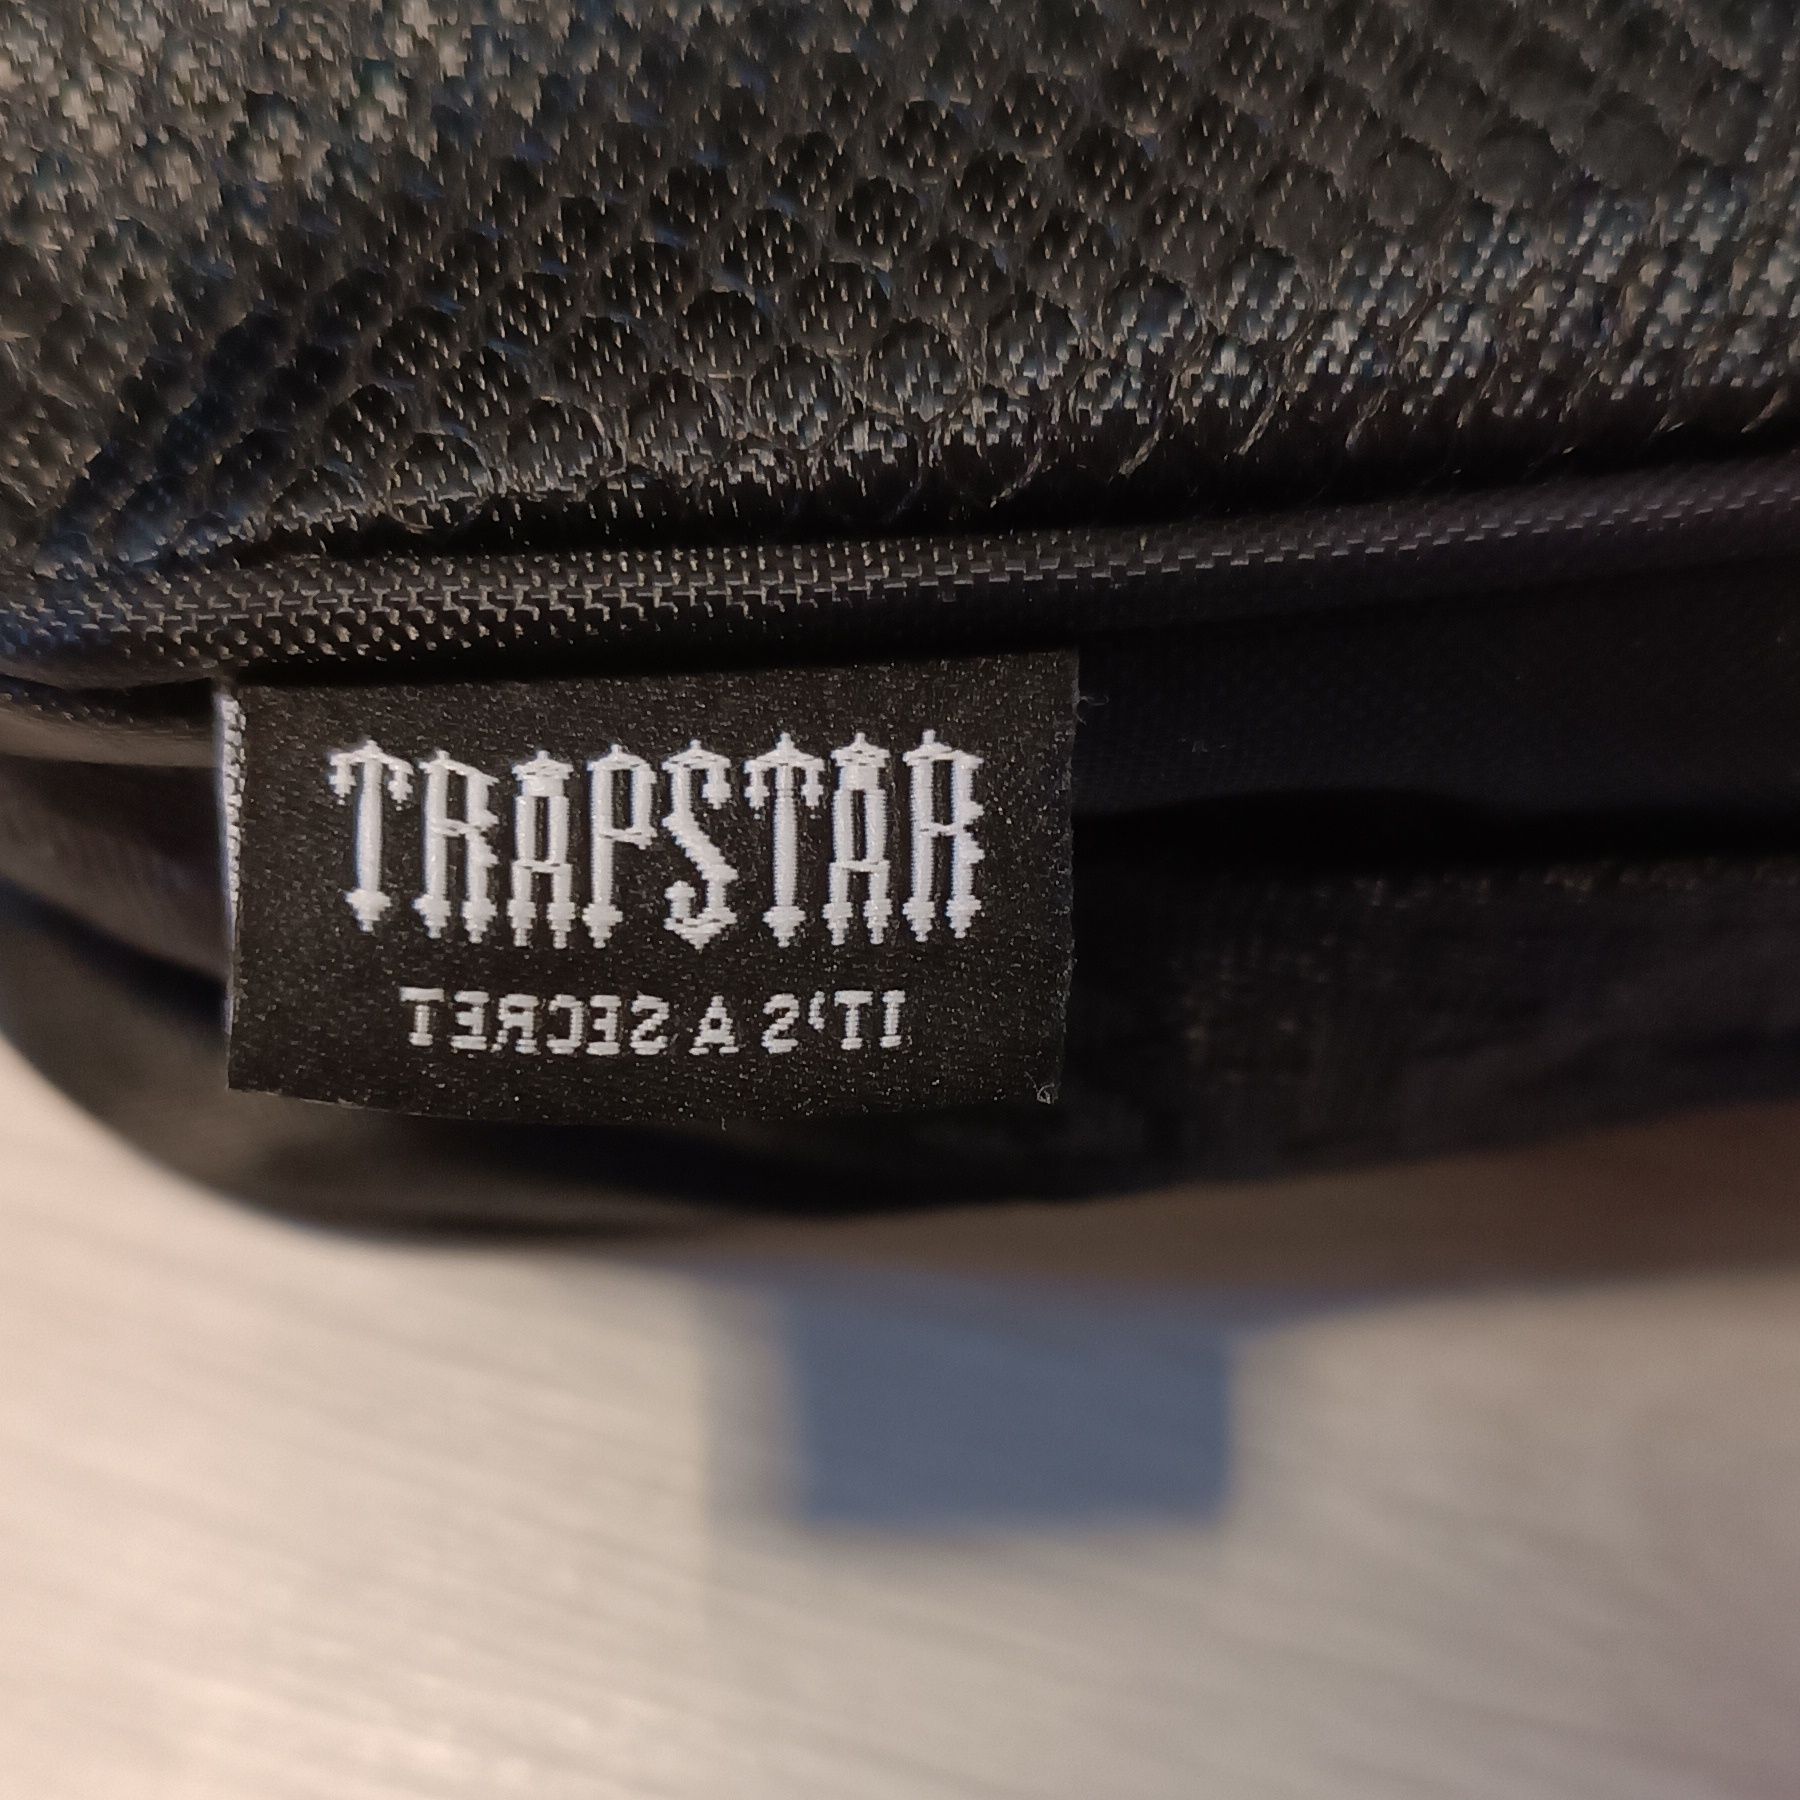 Trapstar bag shoulder bag